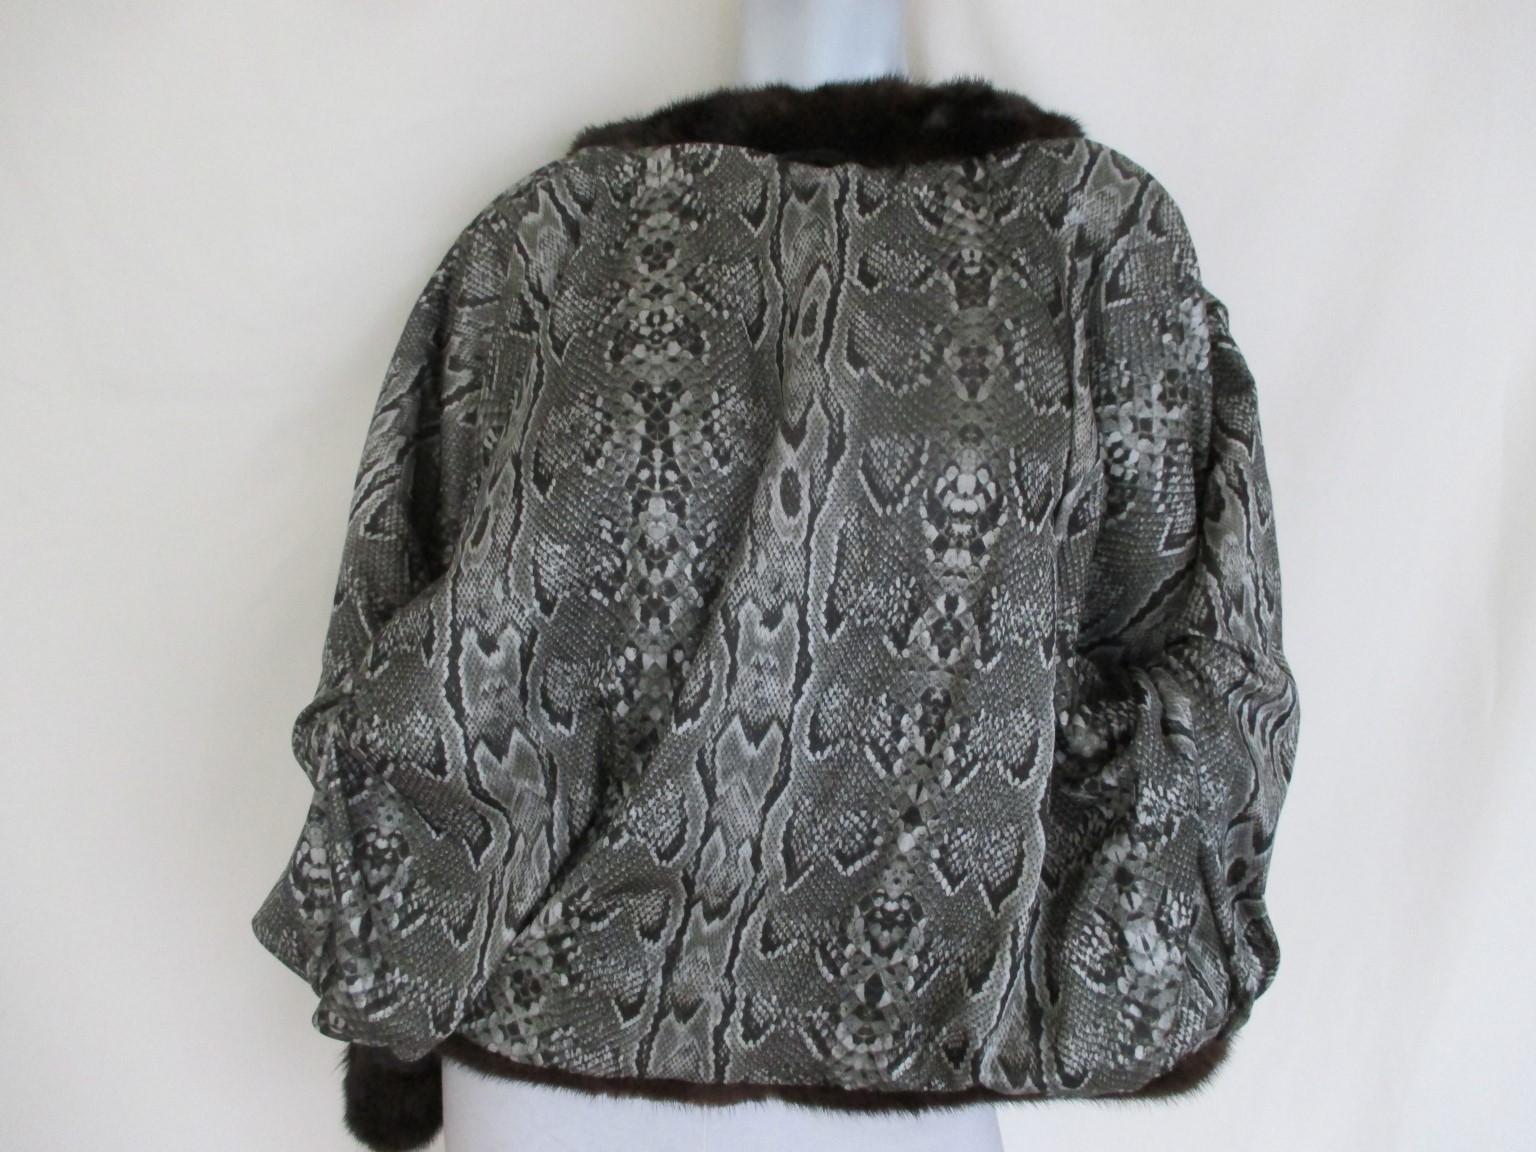 Mink fur Jacket with python print details 1